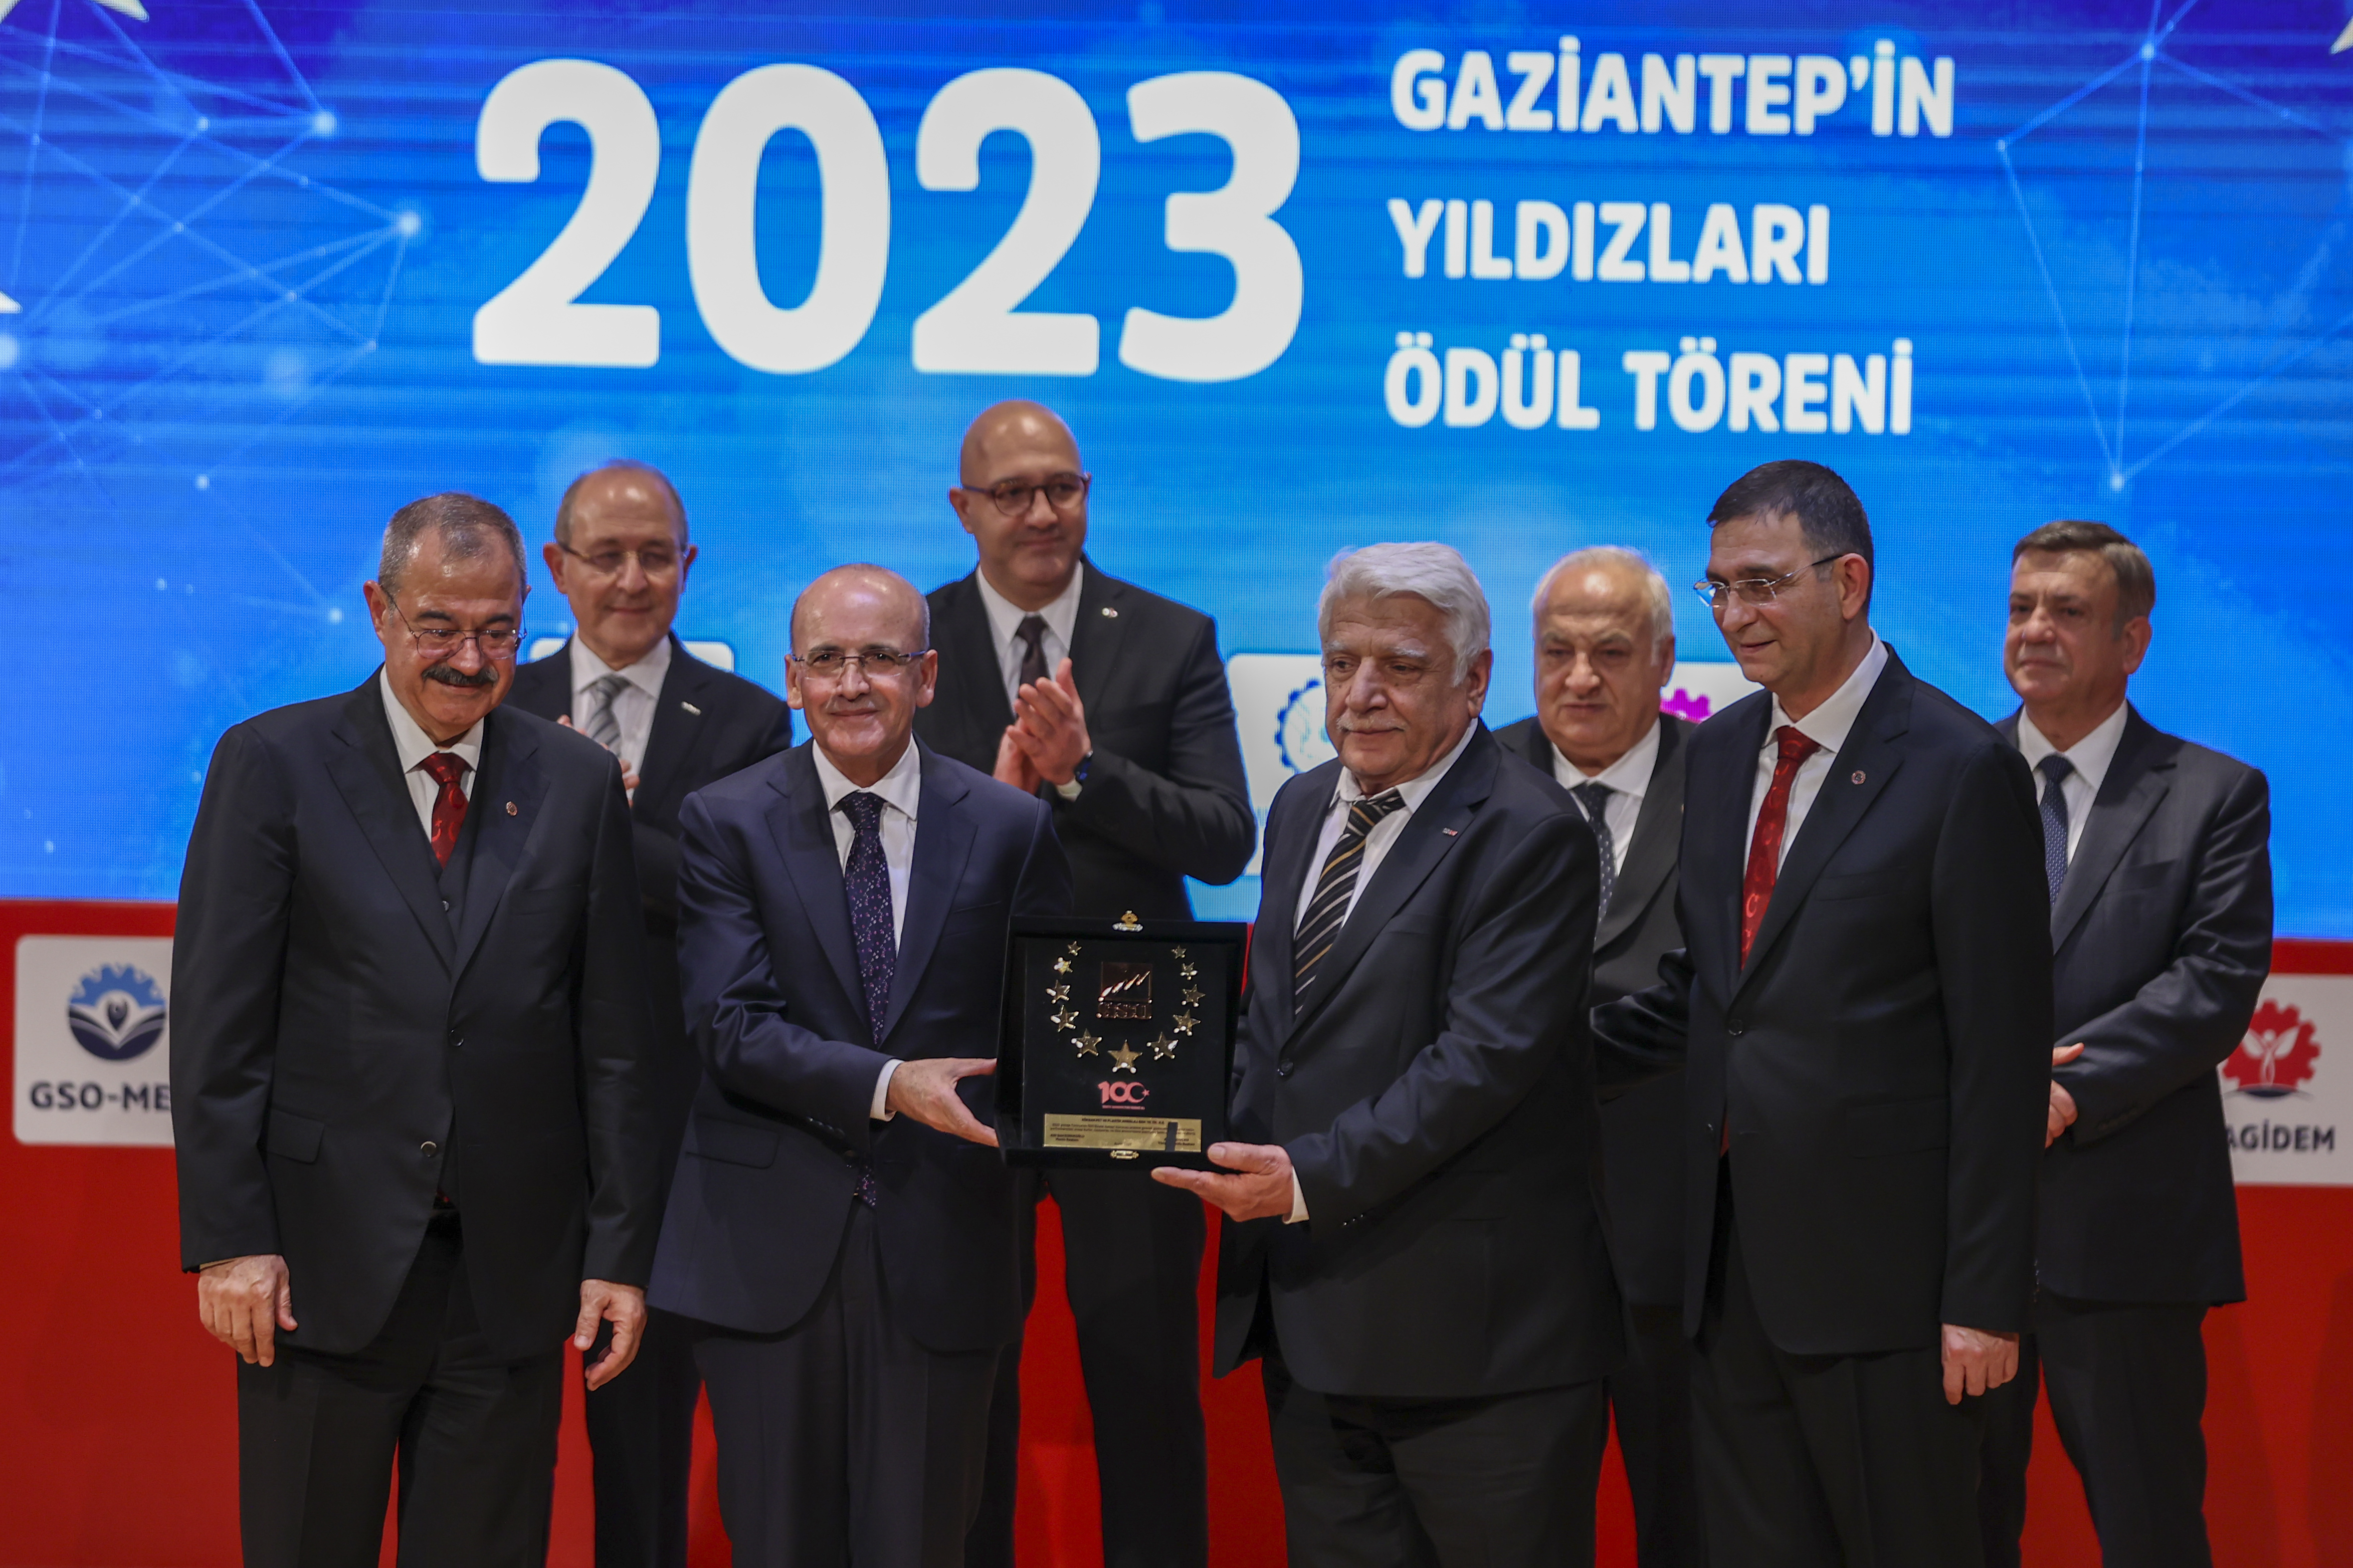 Hazine ve Maliye Bakanı Şimşek, “Gaziantep’in Yıldızları Ödül Töreni”nde konuştu